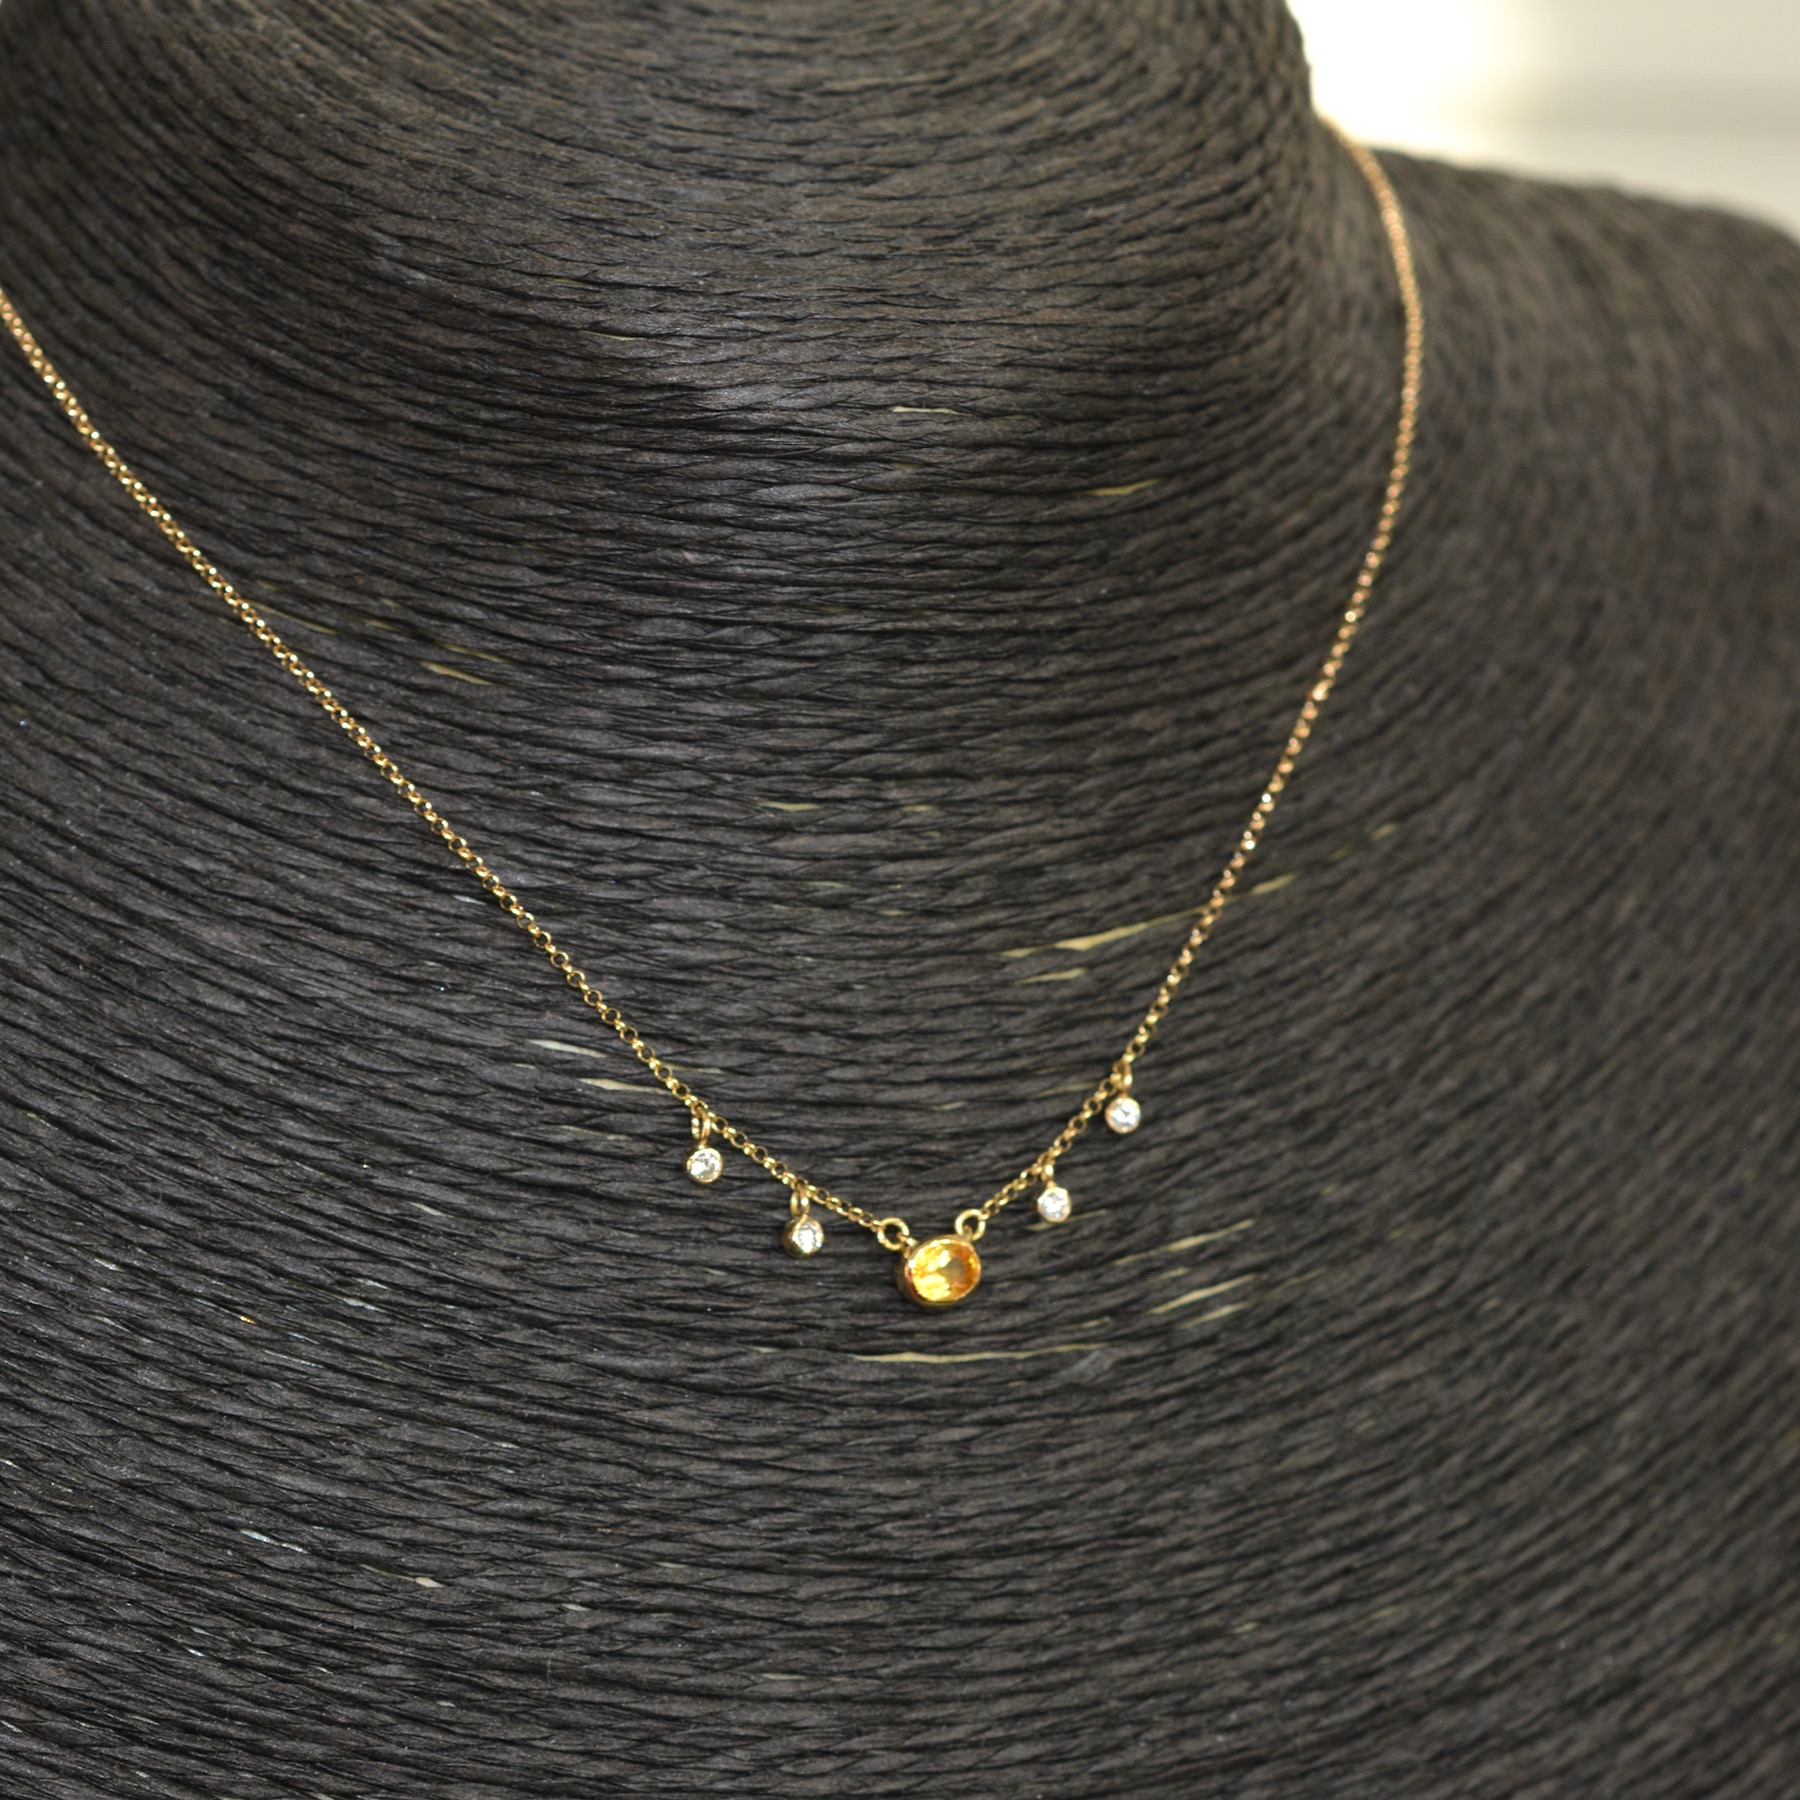 オーダーメイドのイエローサファイアの18金ネックレスはメレーダイヤモンドが揺れる可愛らしいデザインに。